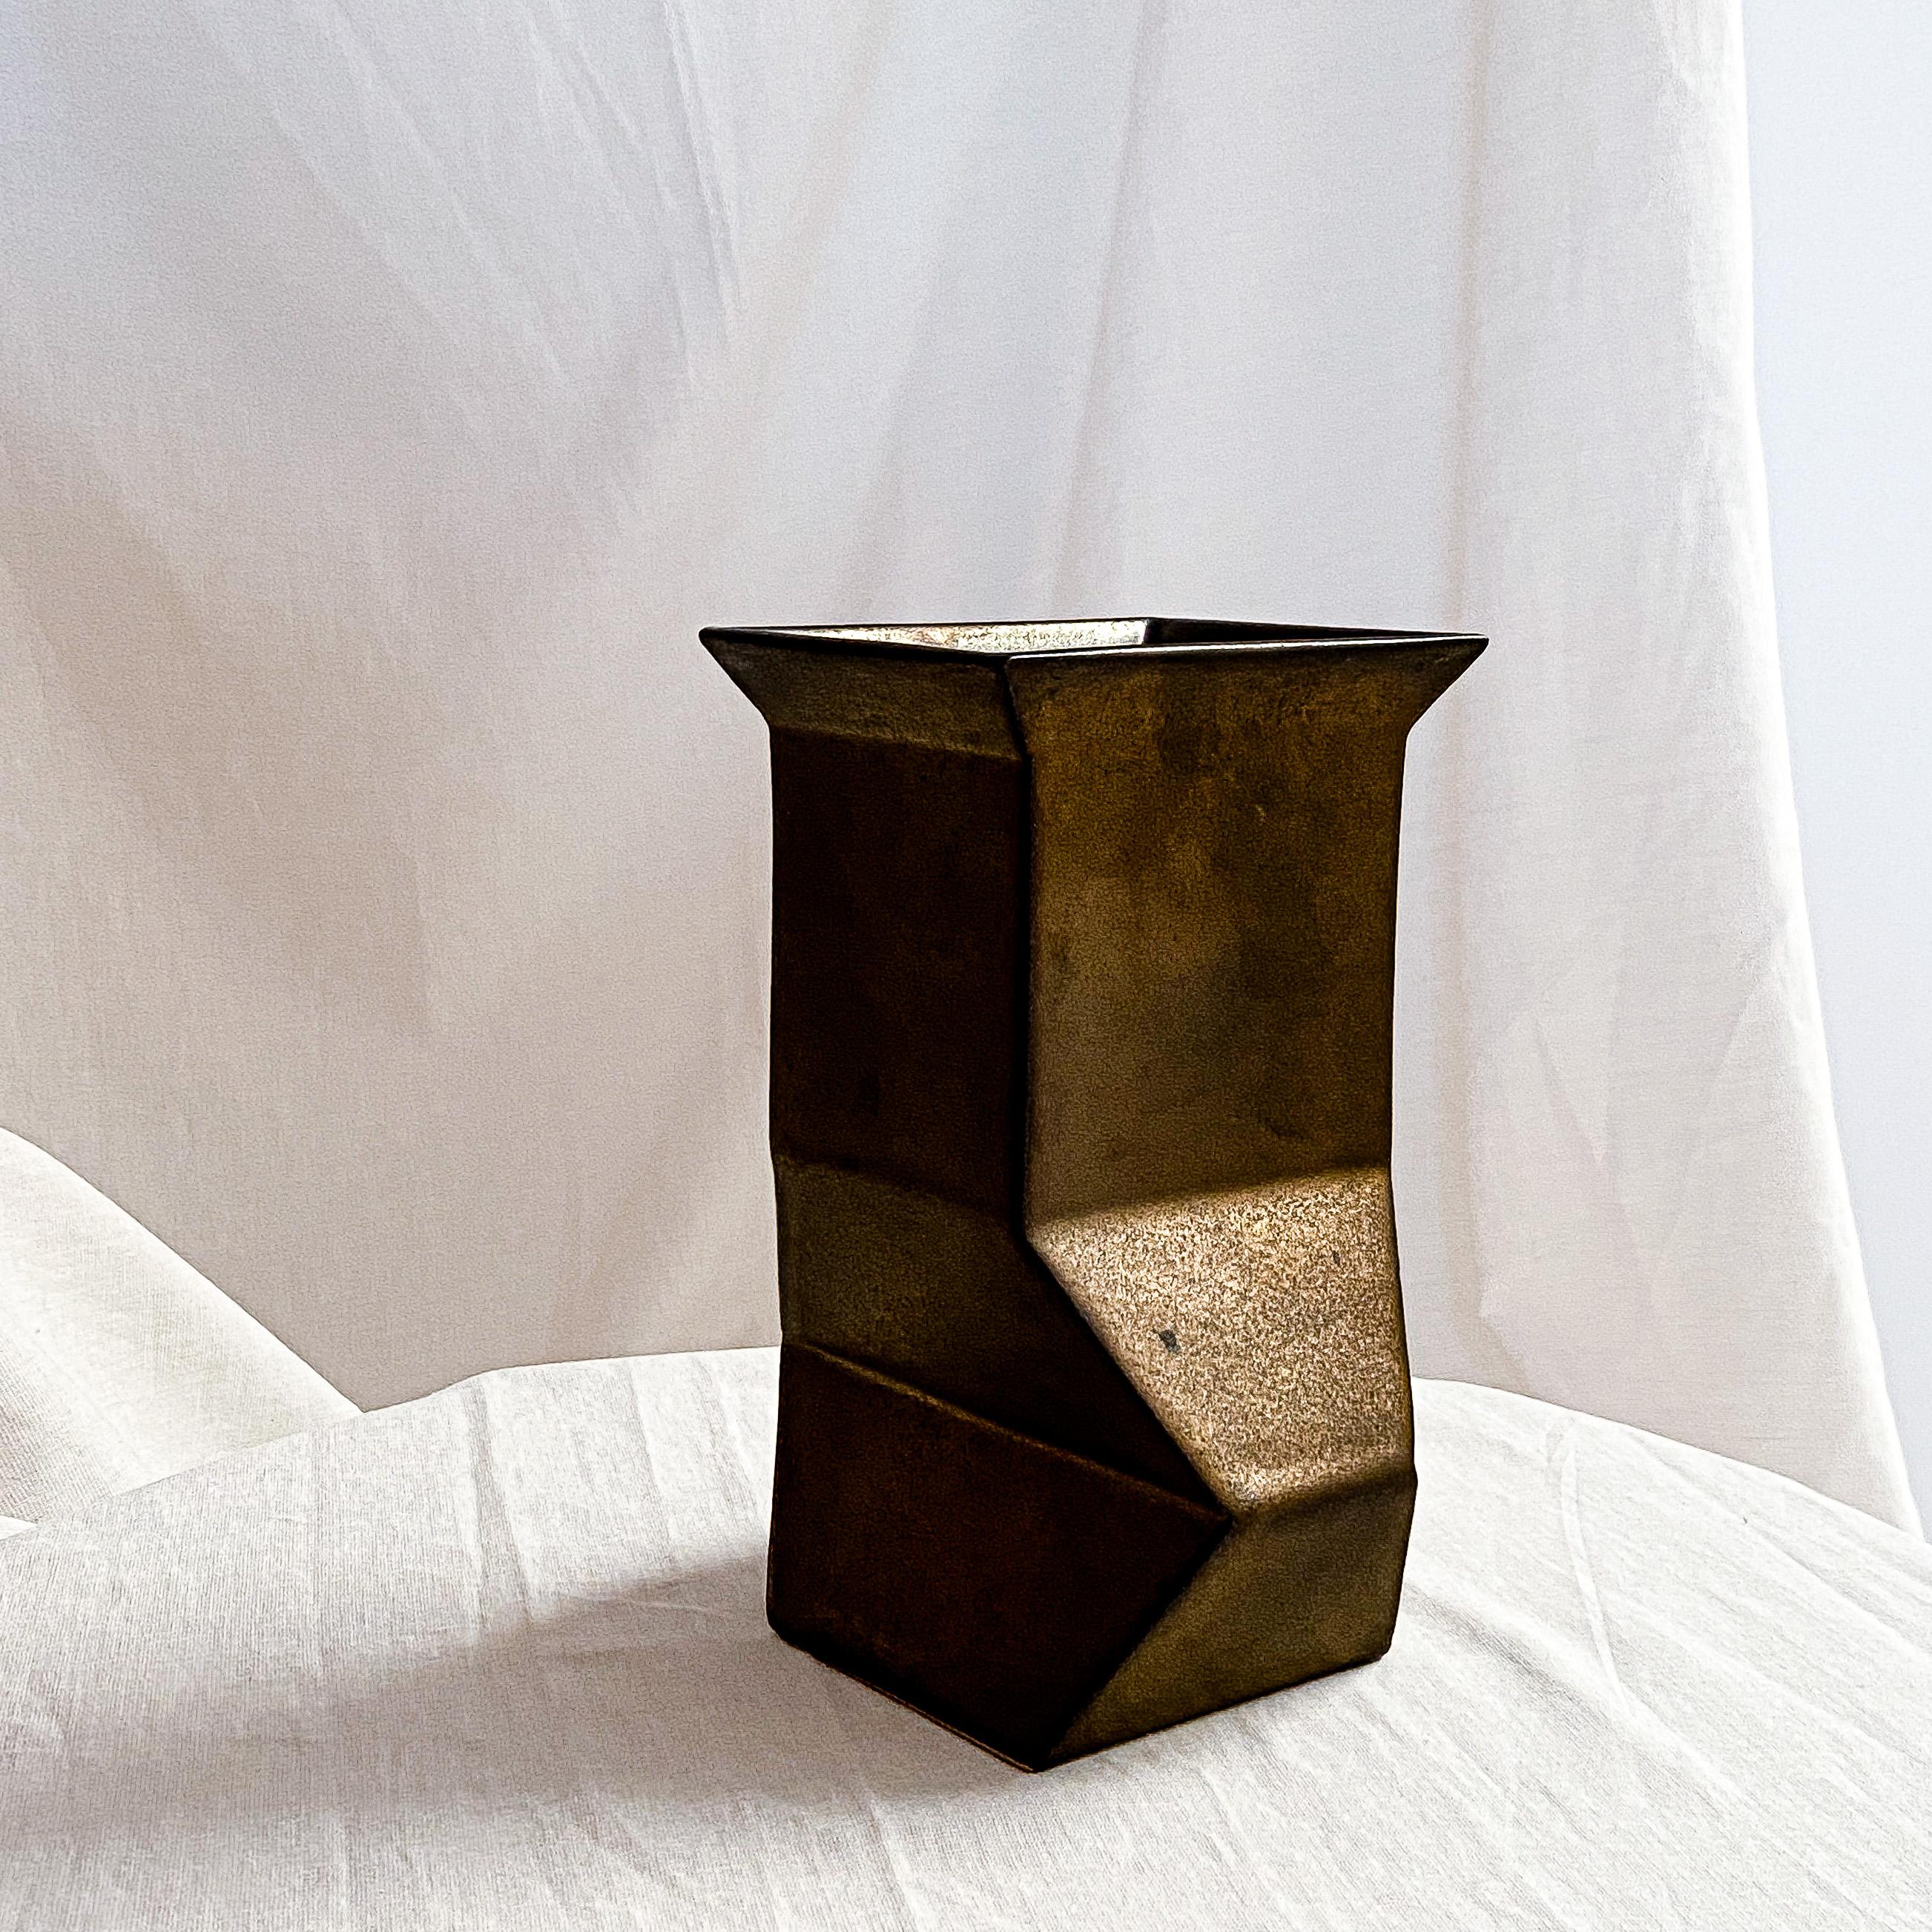 Dutch modernist constructivist vase by Jan van der Vaart In Excellent Condition For Sale In AMSTERDAM, NL